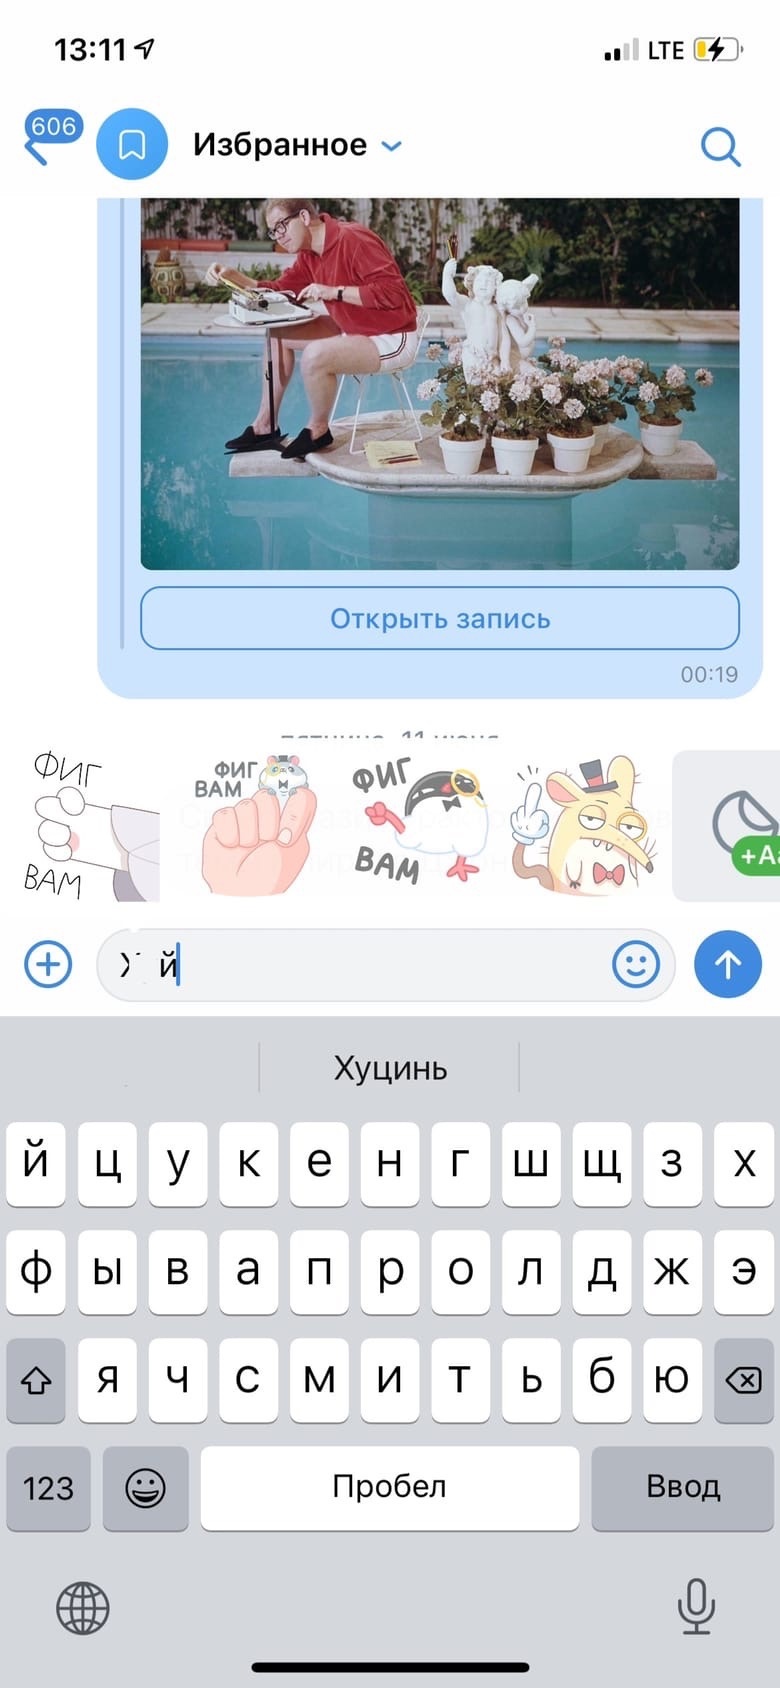 Для некоторых слов «ВКонтакте» дает даже несколько «интеллигентных» аналогов, а часть стикеров предлагает на замену разным выражениям